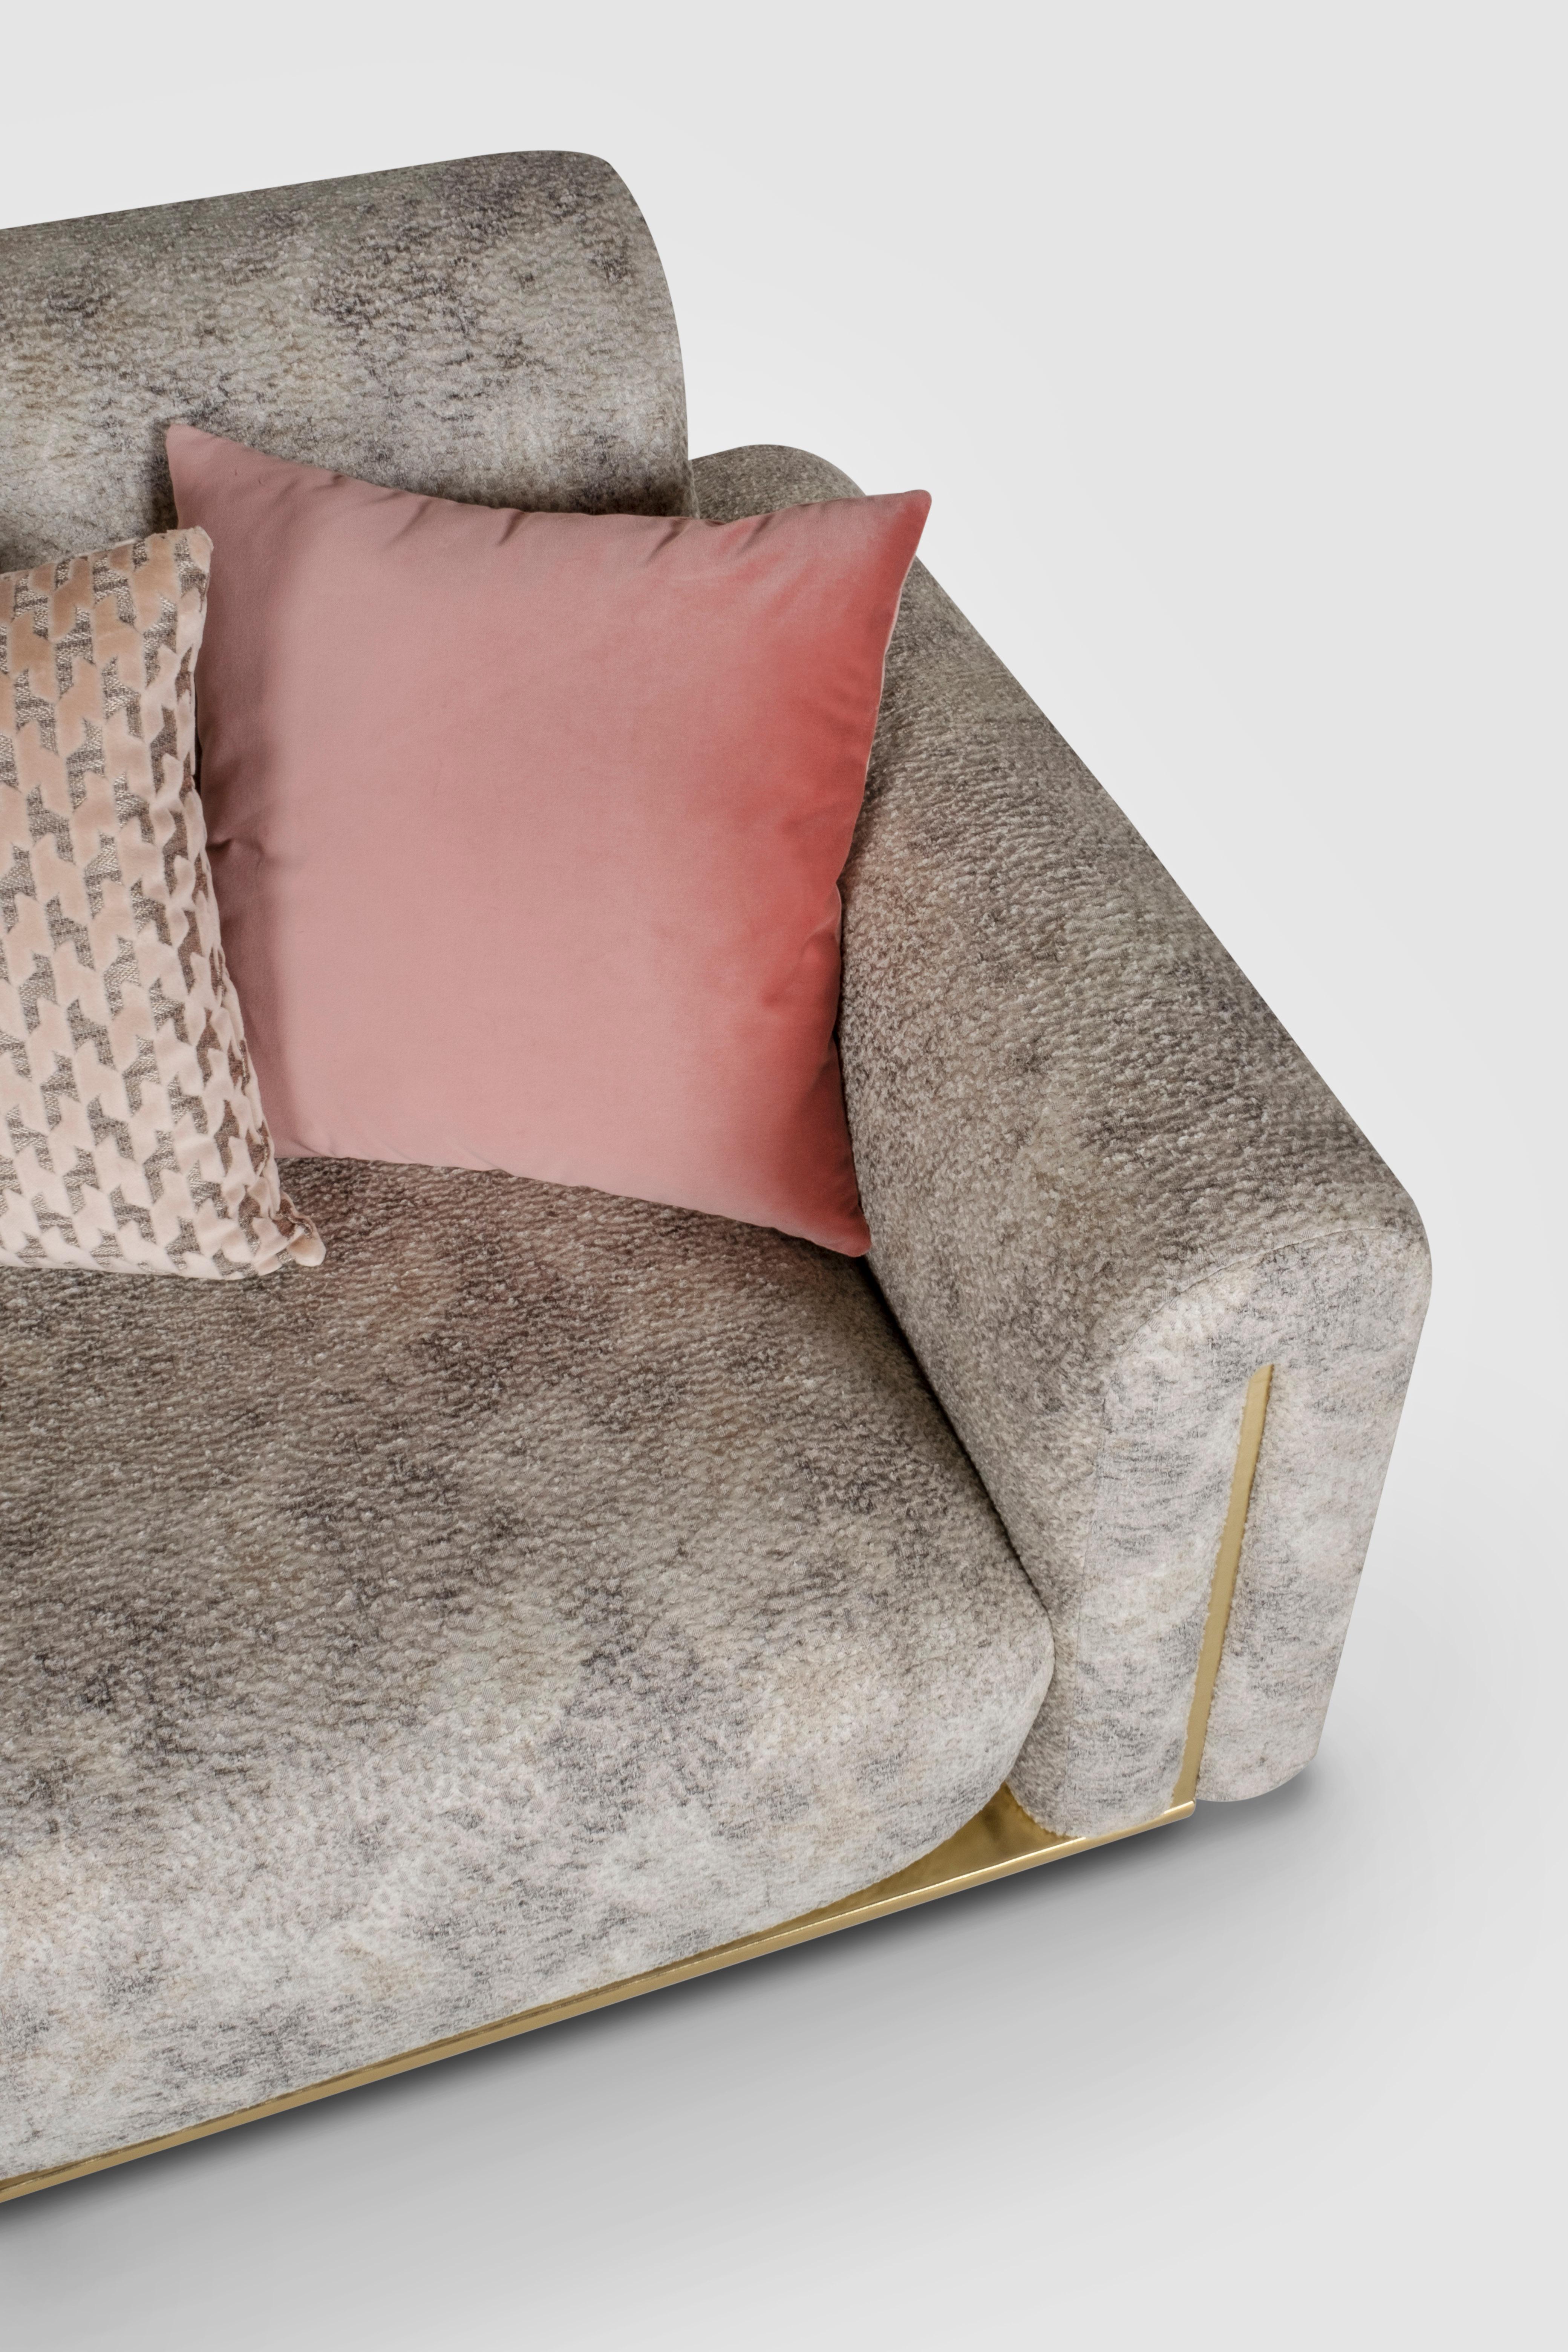 Modern Beijinho Sofa, Beige Velvet Leather, Handmade in Portugal by Greenapple In New Condition For Sale In Lisboa, PT